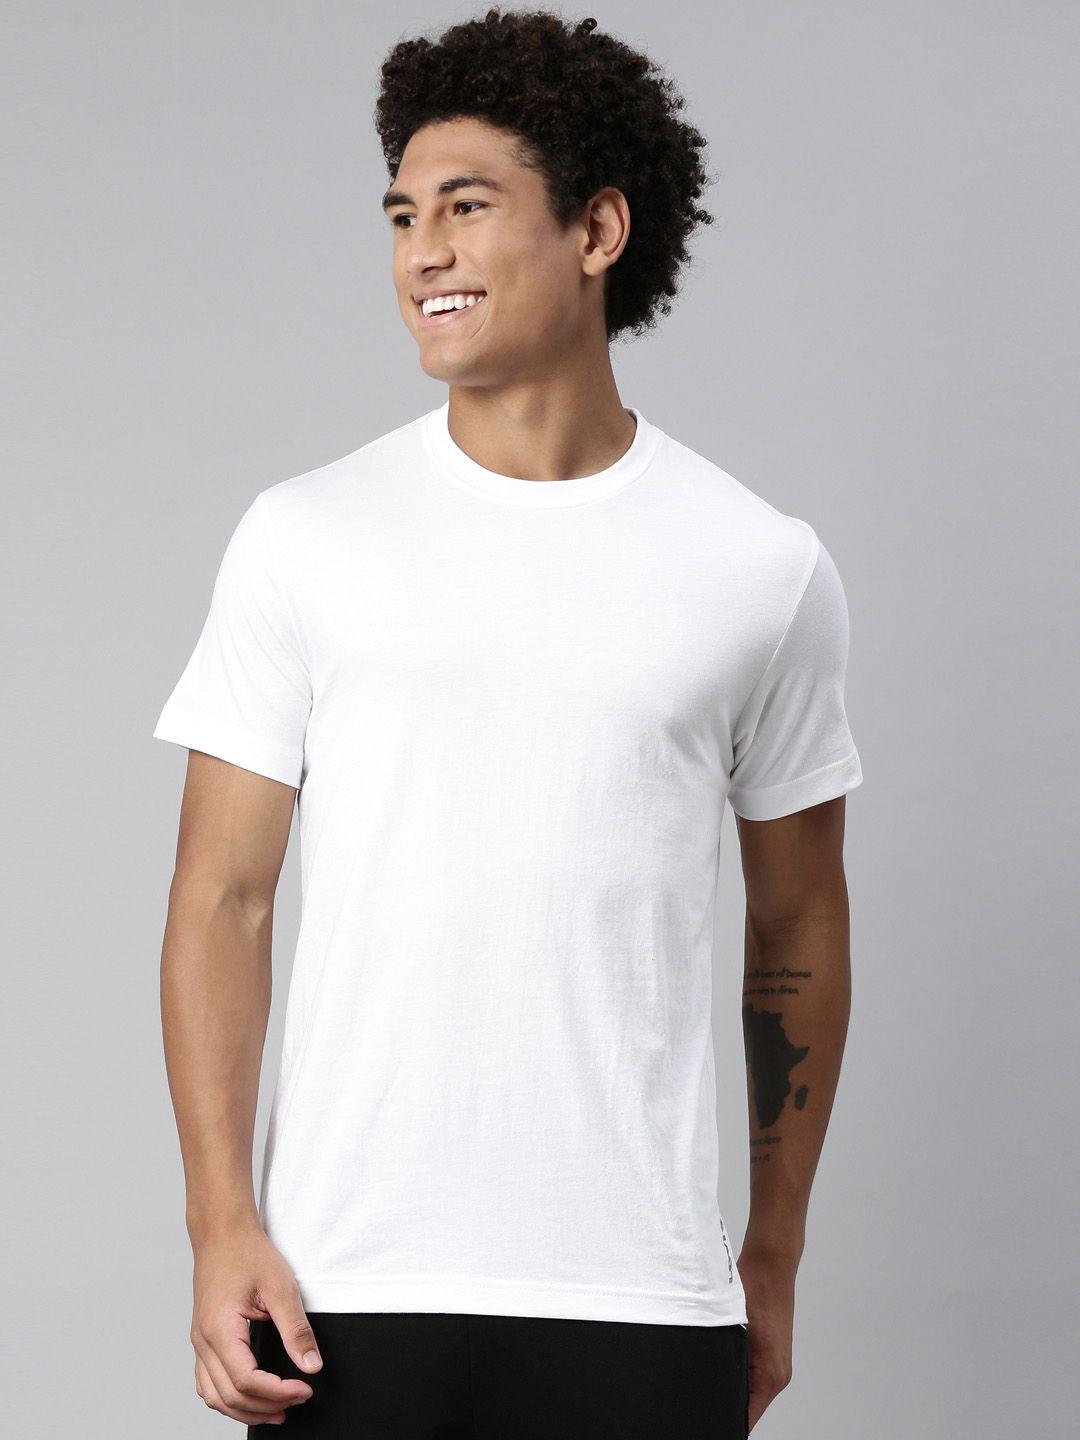 Levis Men Smartskin Technology Pure Cotton Lounge T-shirts-025